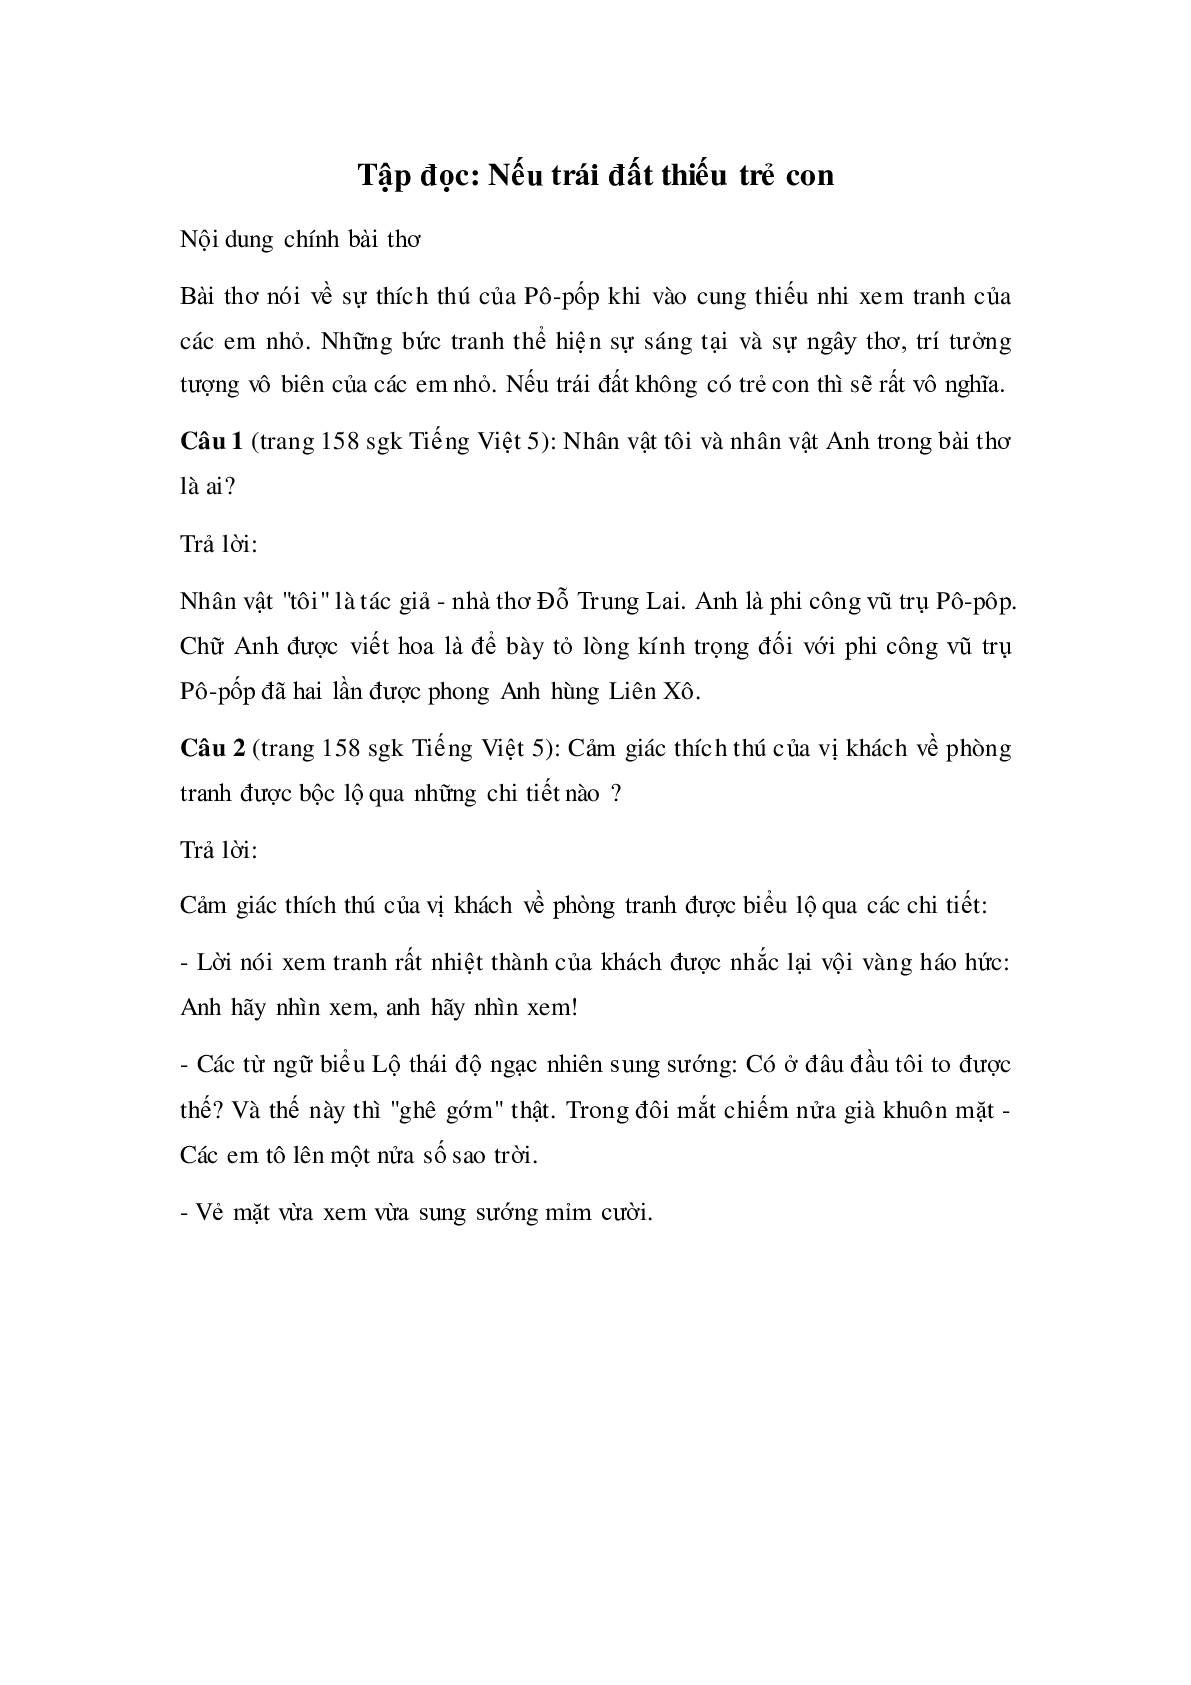 Soạn Tiếng Việt lớp 5:Tập đọc: Nếu trái đất thiếu trẻ con mới nhất (trang 1)